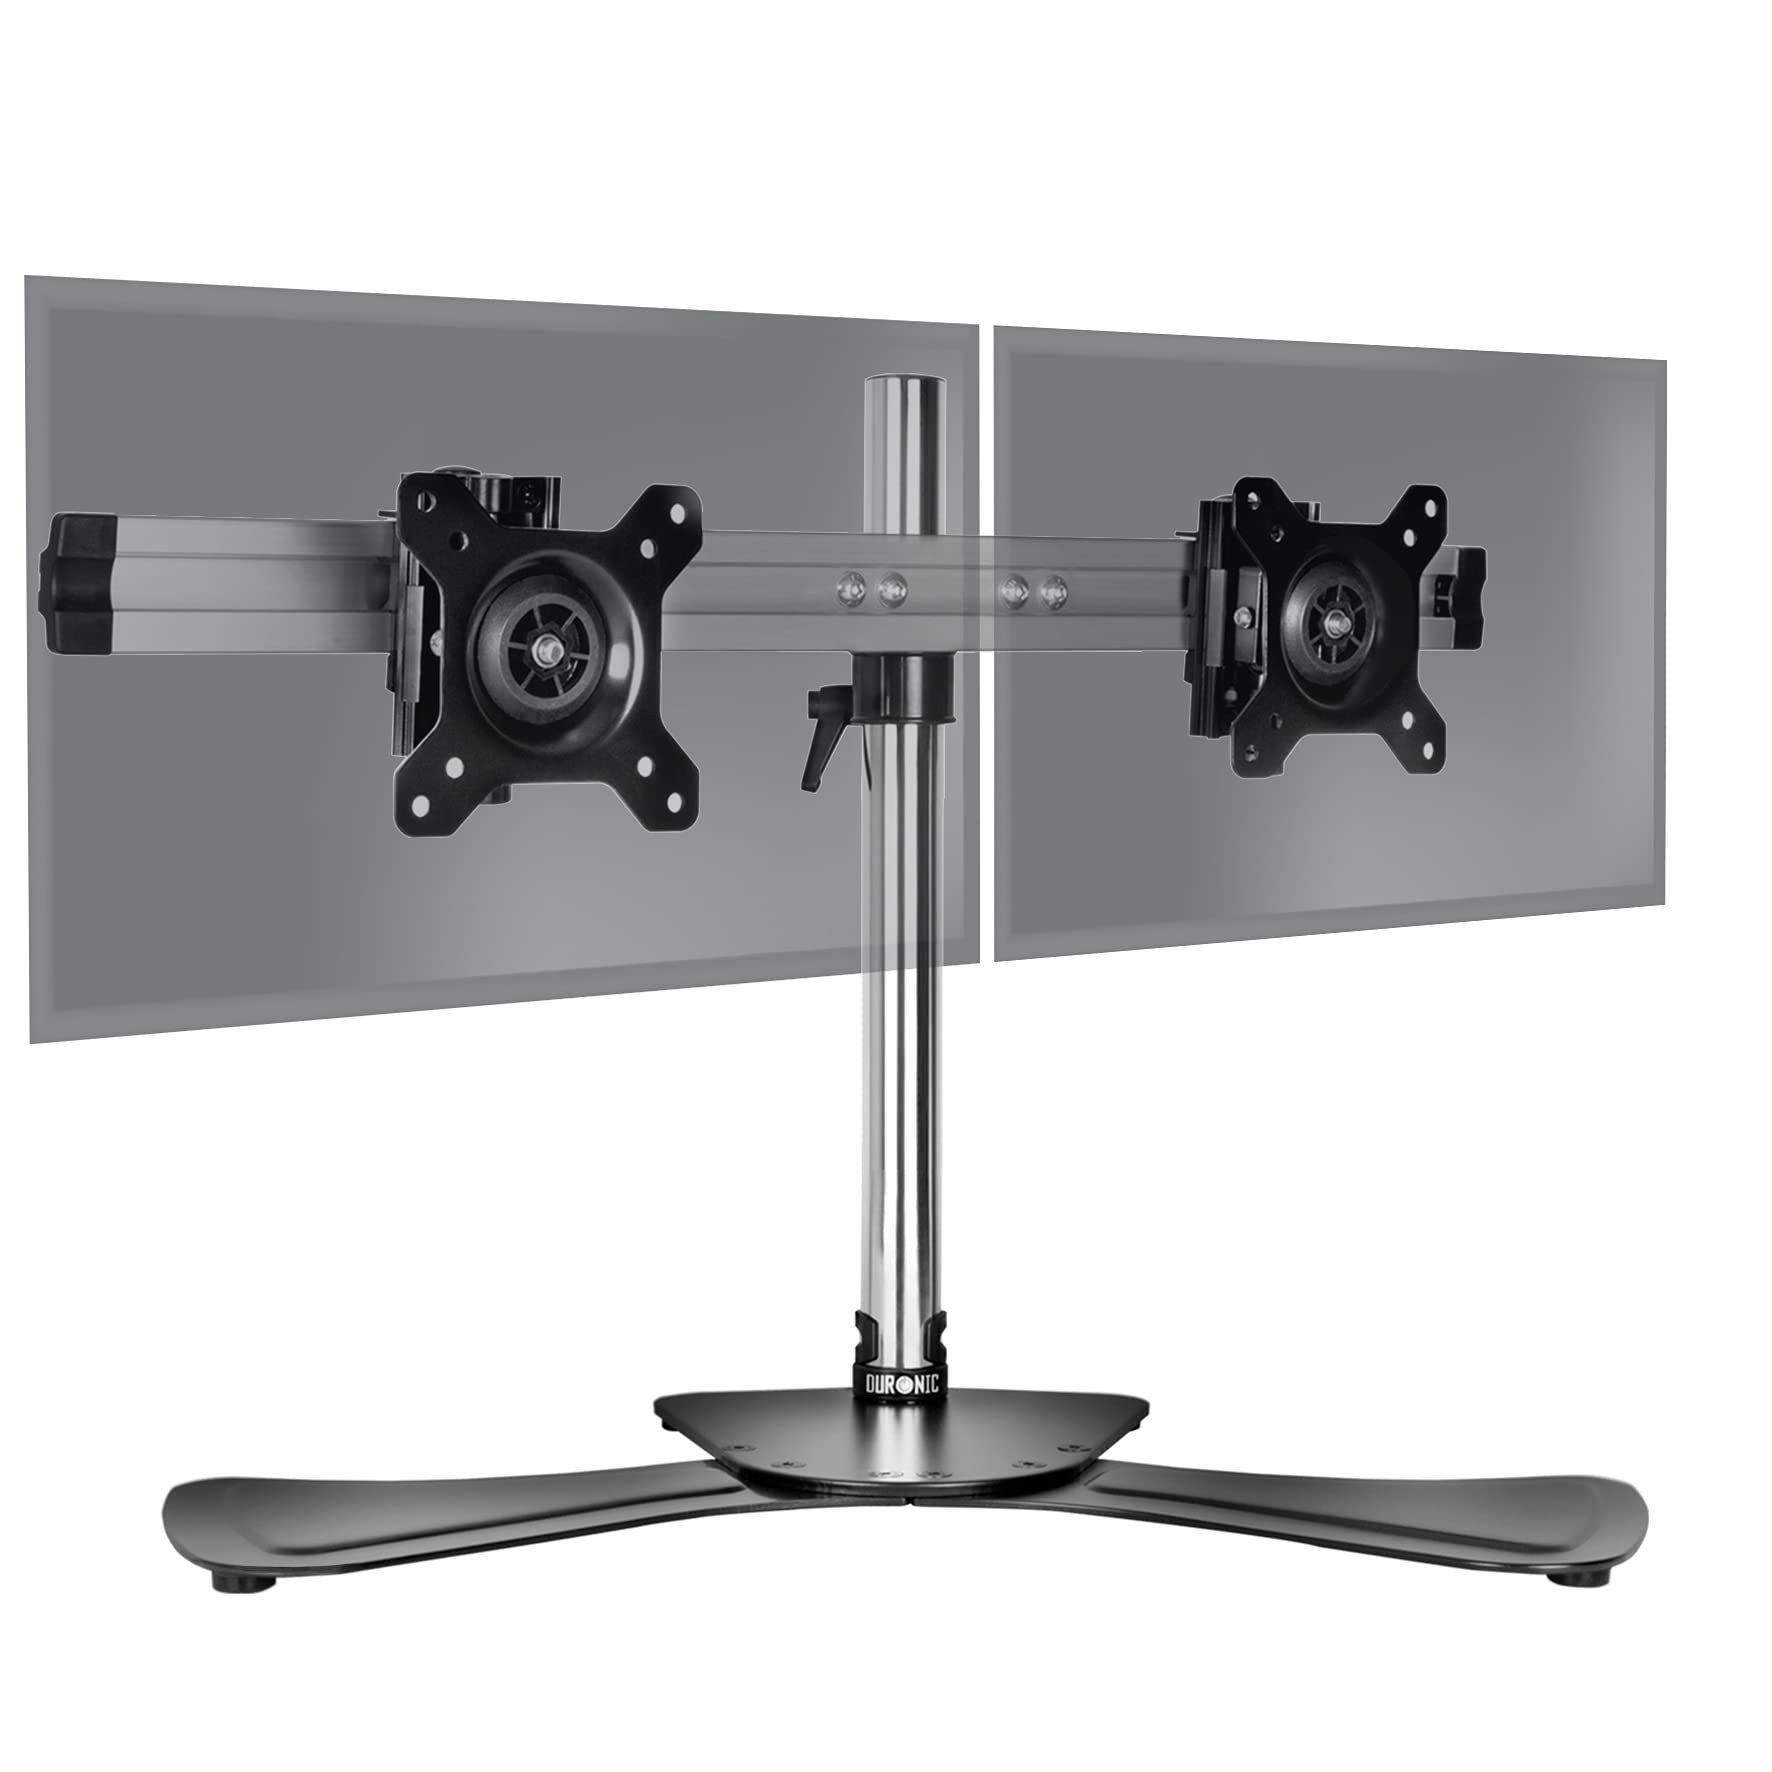 17-32 Zoll Monitor Halterung 2 monitore Höhenverstellbar, Gasdruckfeder Arm  360°Drehbar, für LED LCD Bildschirm, VESA 75/100